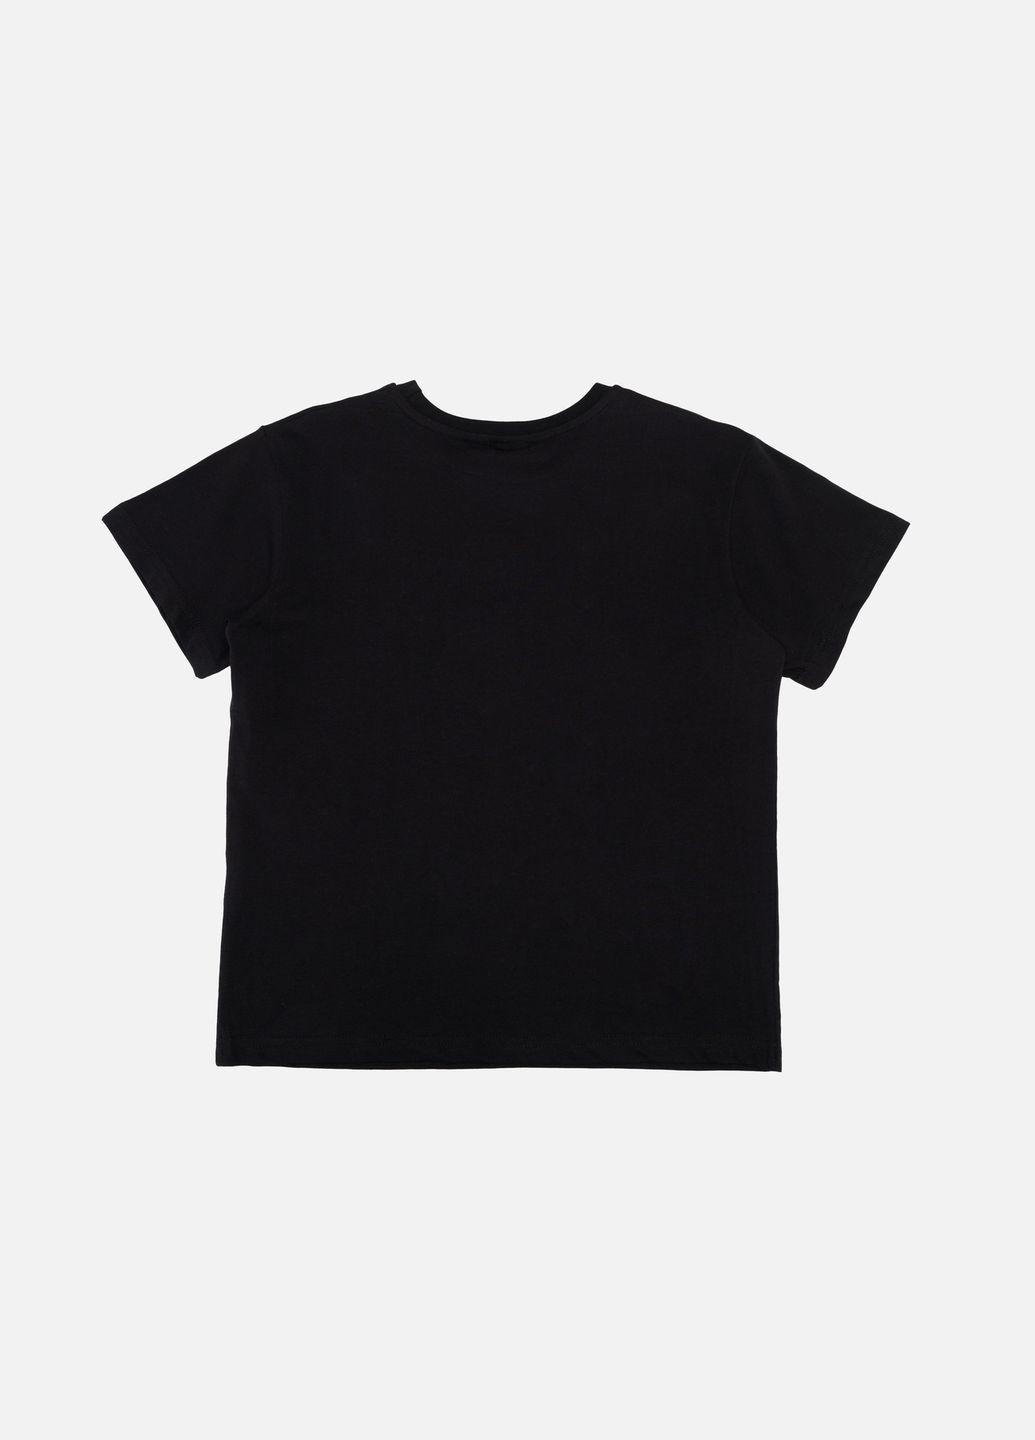 Черная летняя футболка с коротким рукавом для мальчика цвет черный цб-00243028 BLN